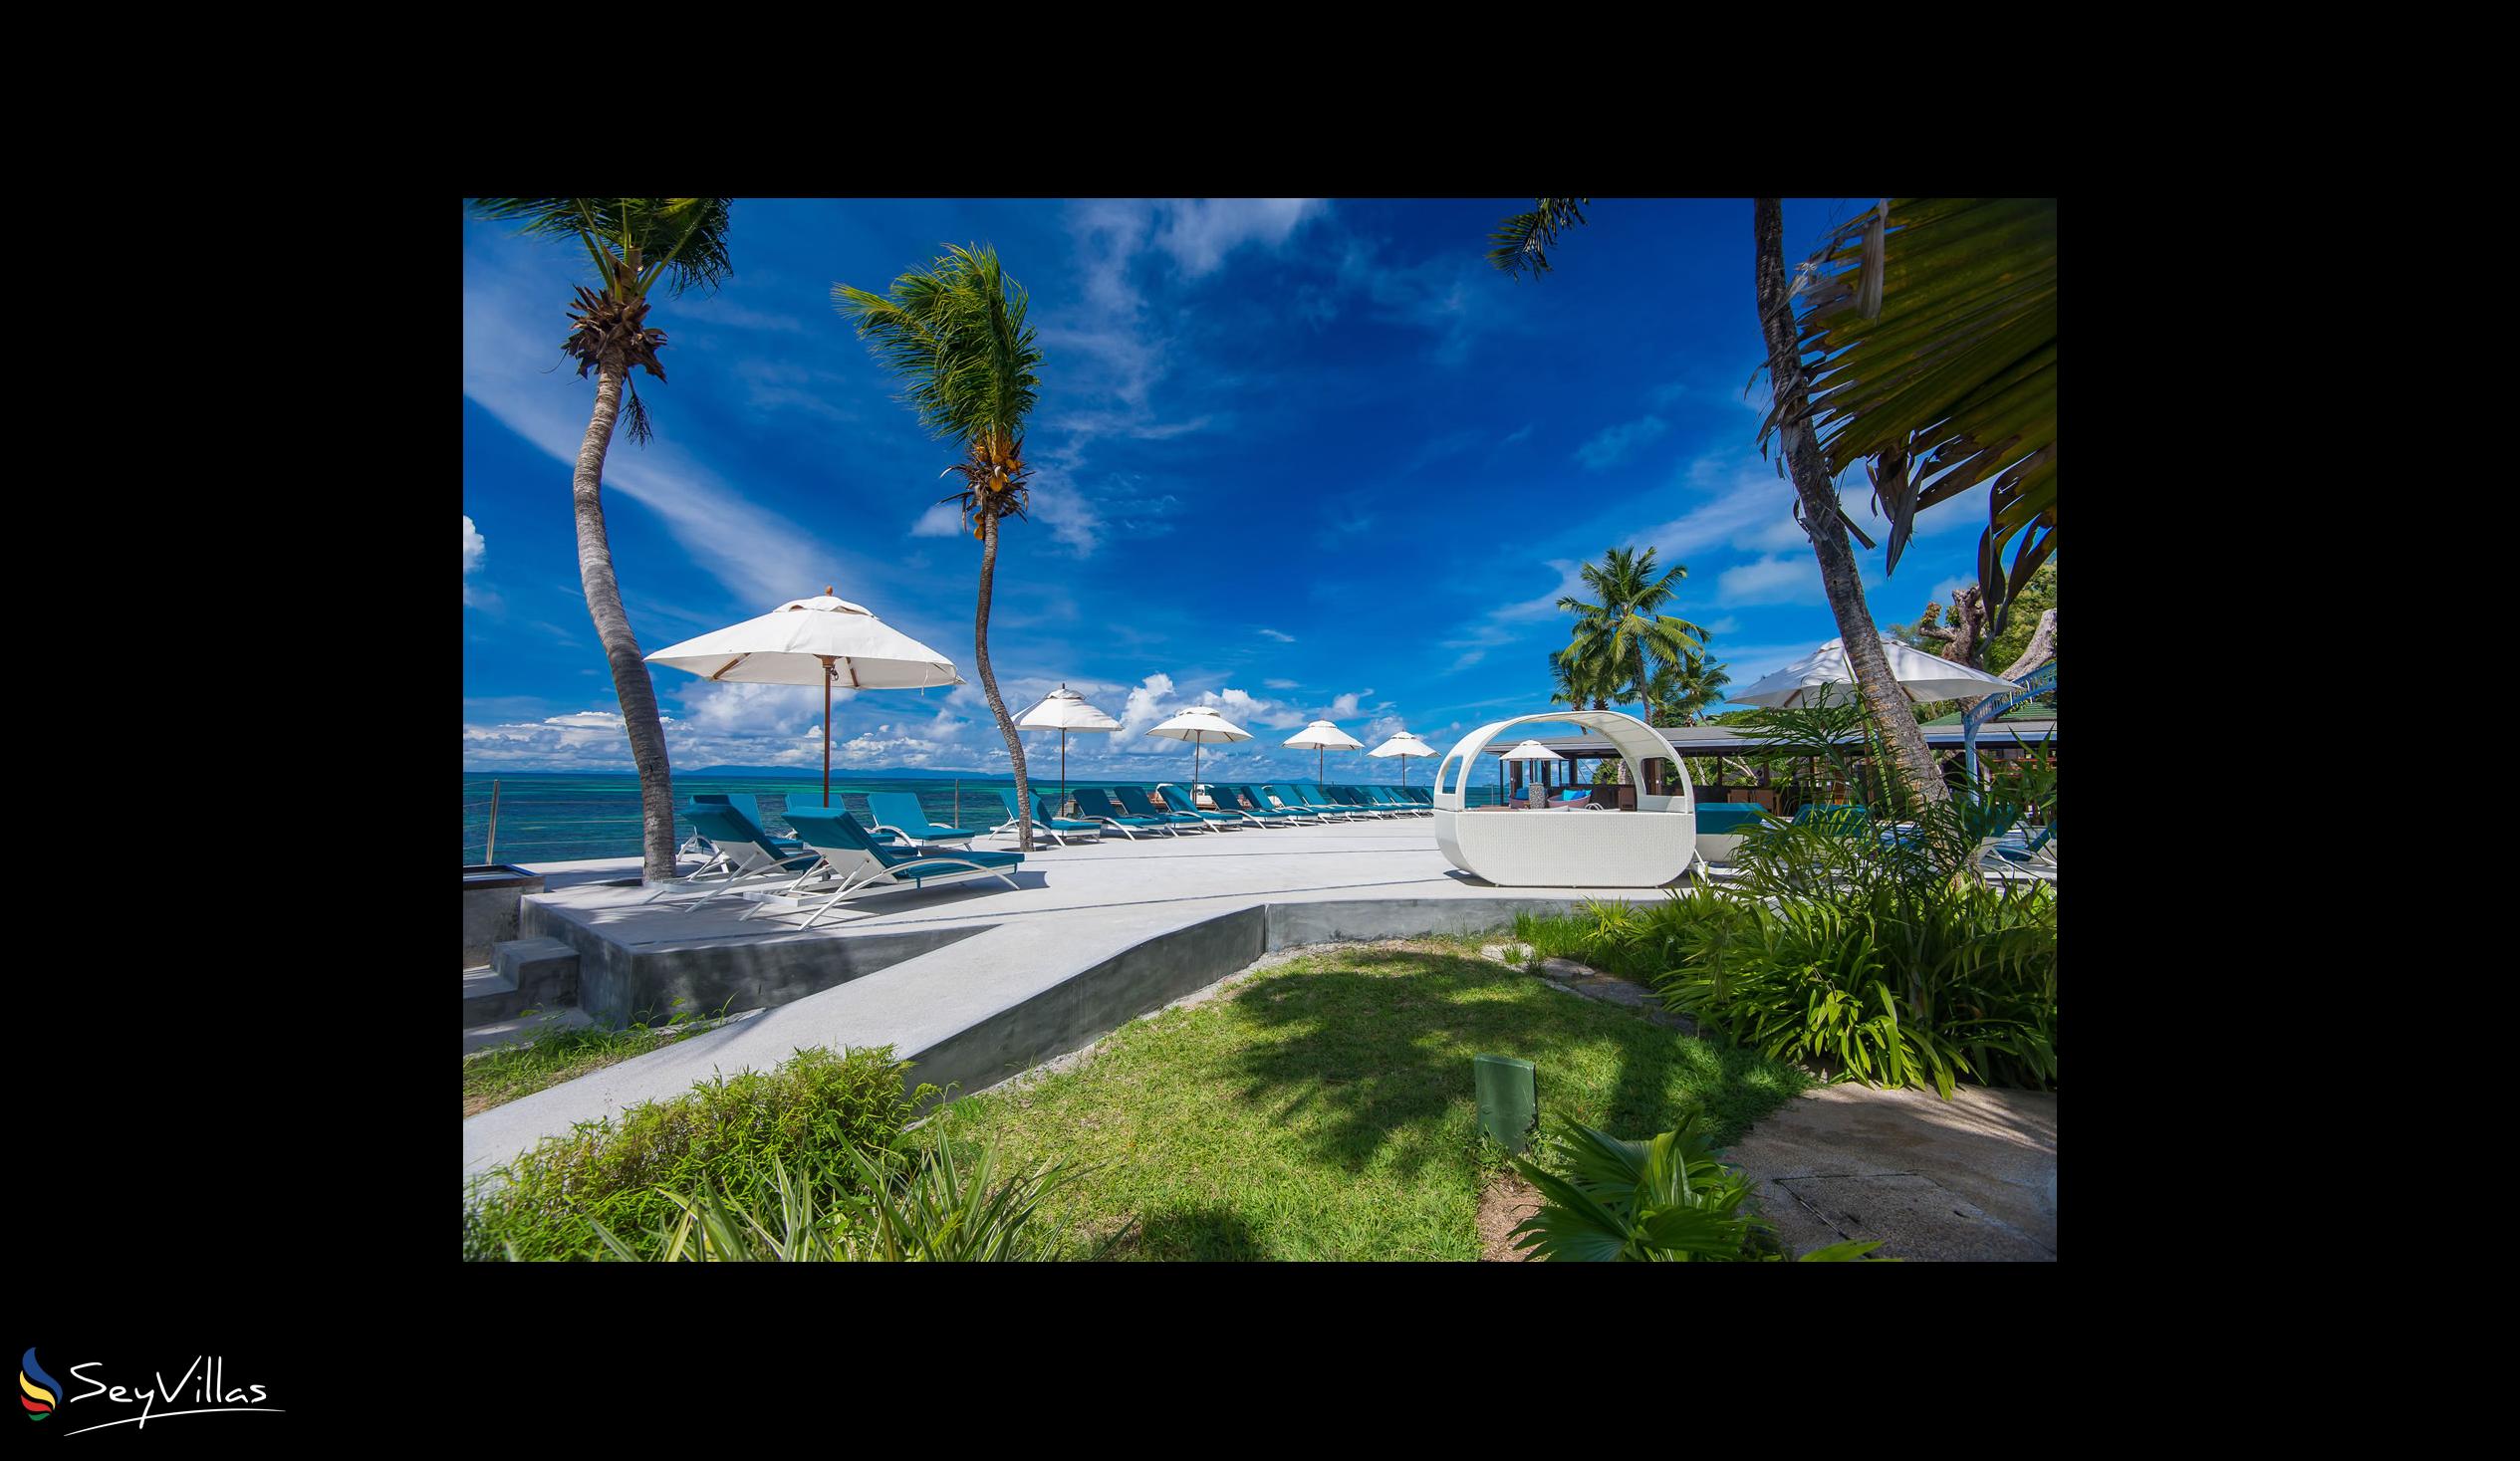 Foto 14: Coco de Mer & Black Parrot Suites - Aussenbereich - Praslin (Seychellen)